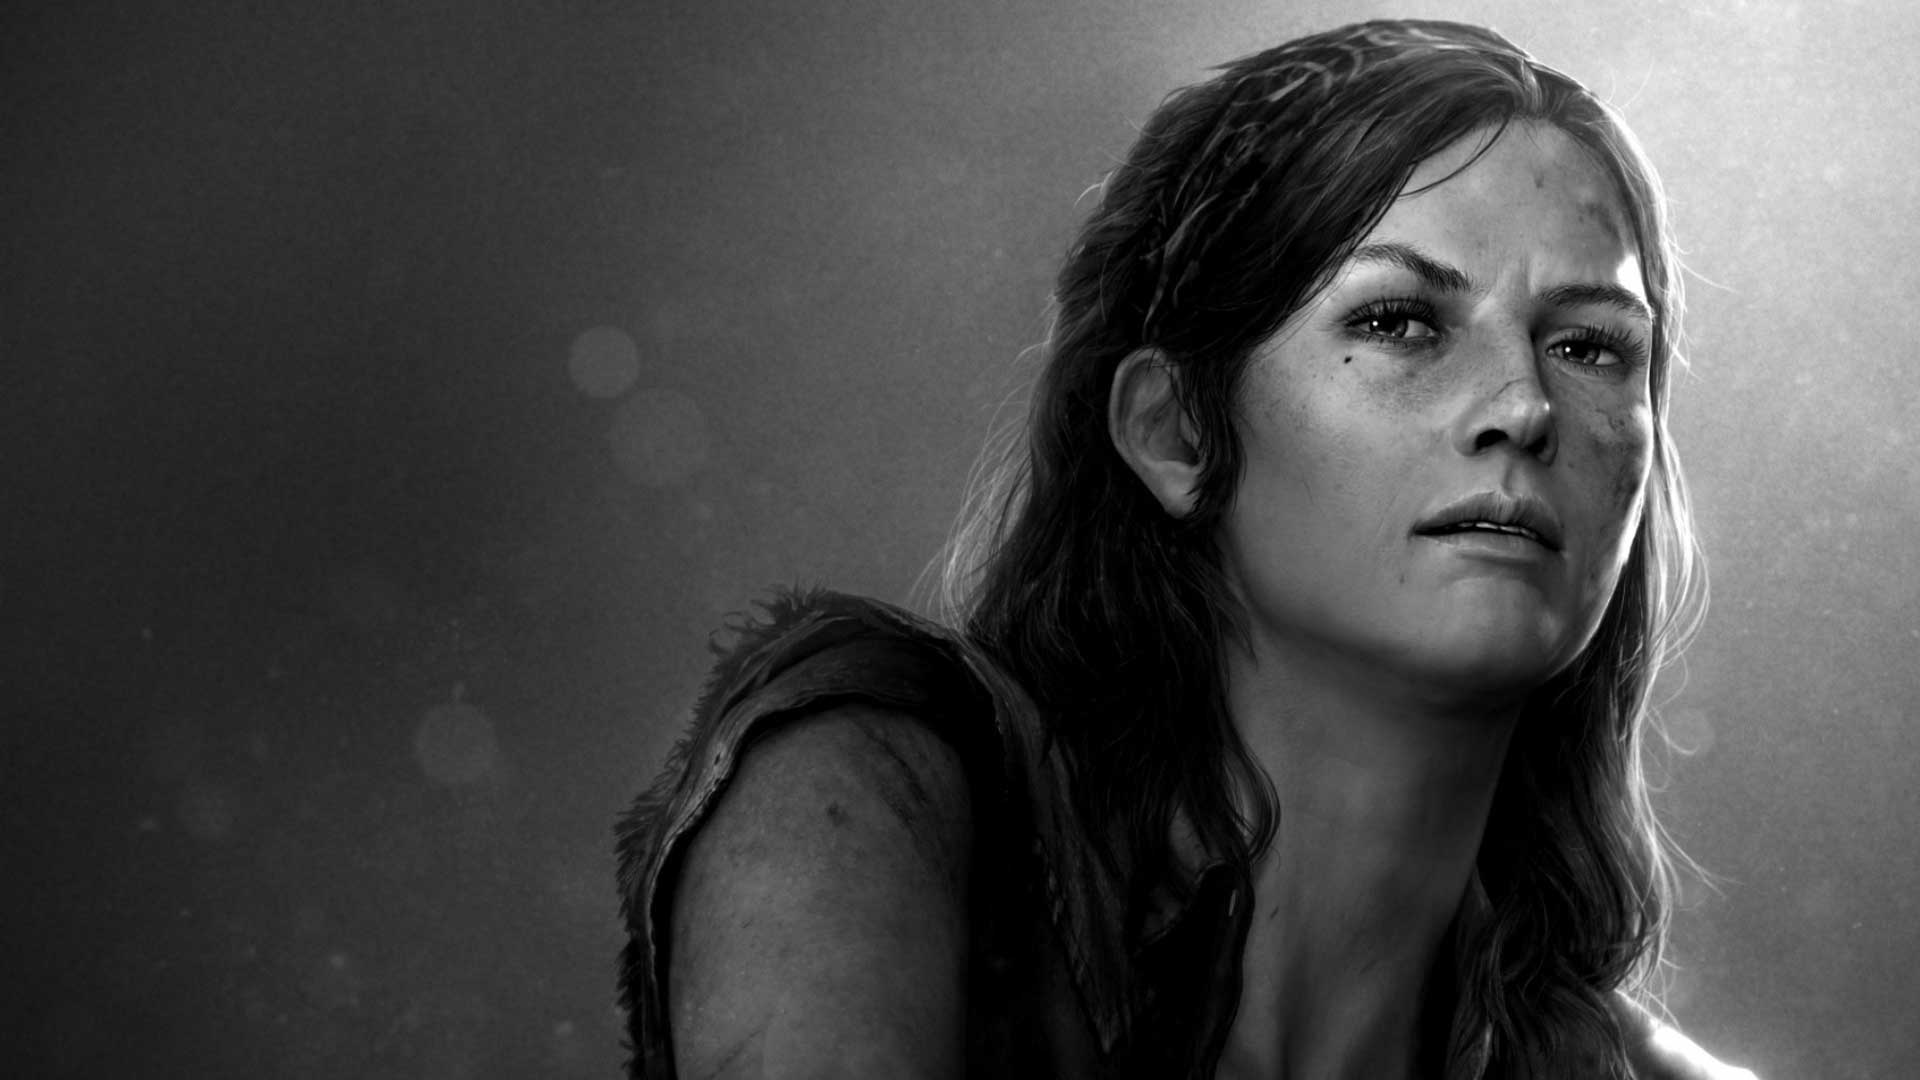 آنی ورشینگ بازیگر نقش تس در بازی The Last of Us درگذشت